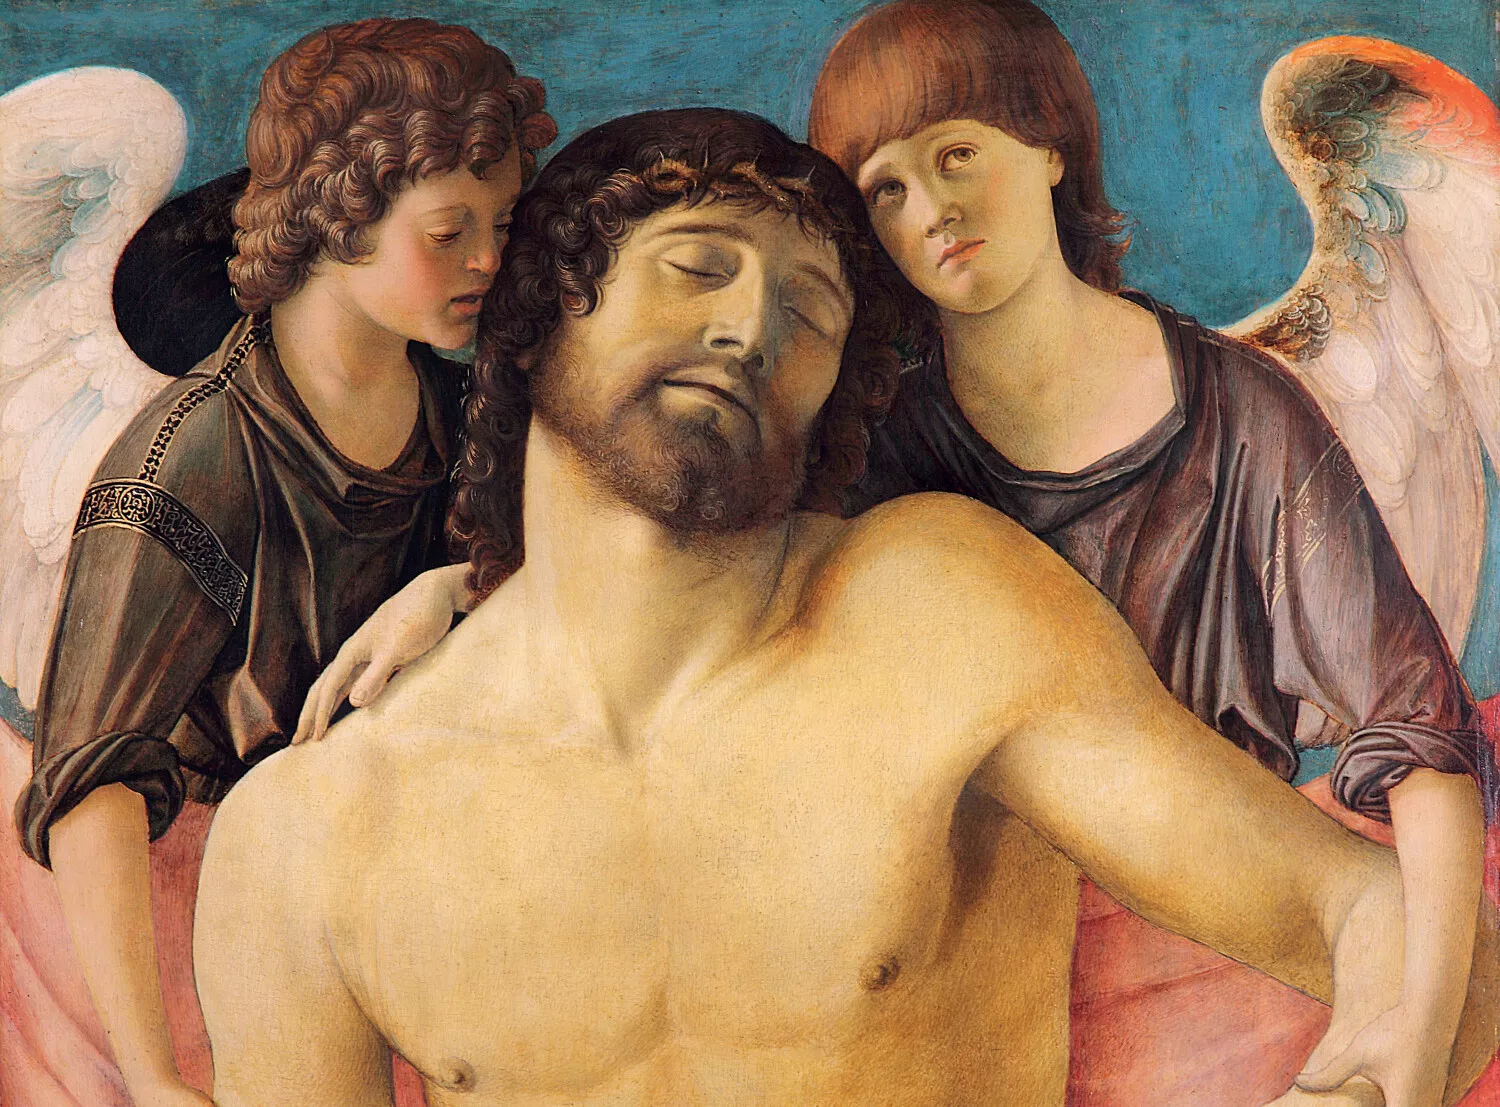 Giovanni Bellini, Influences croisées